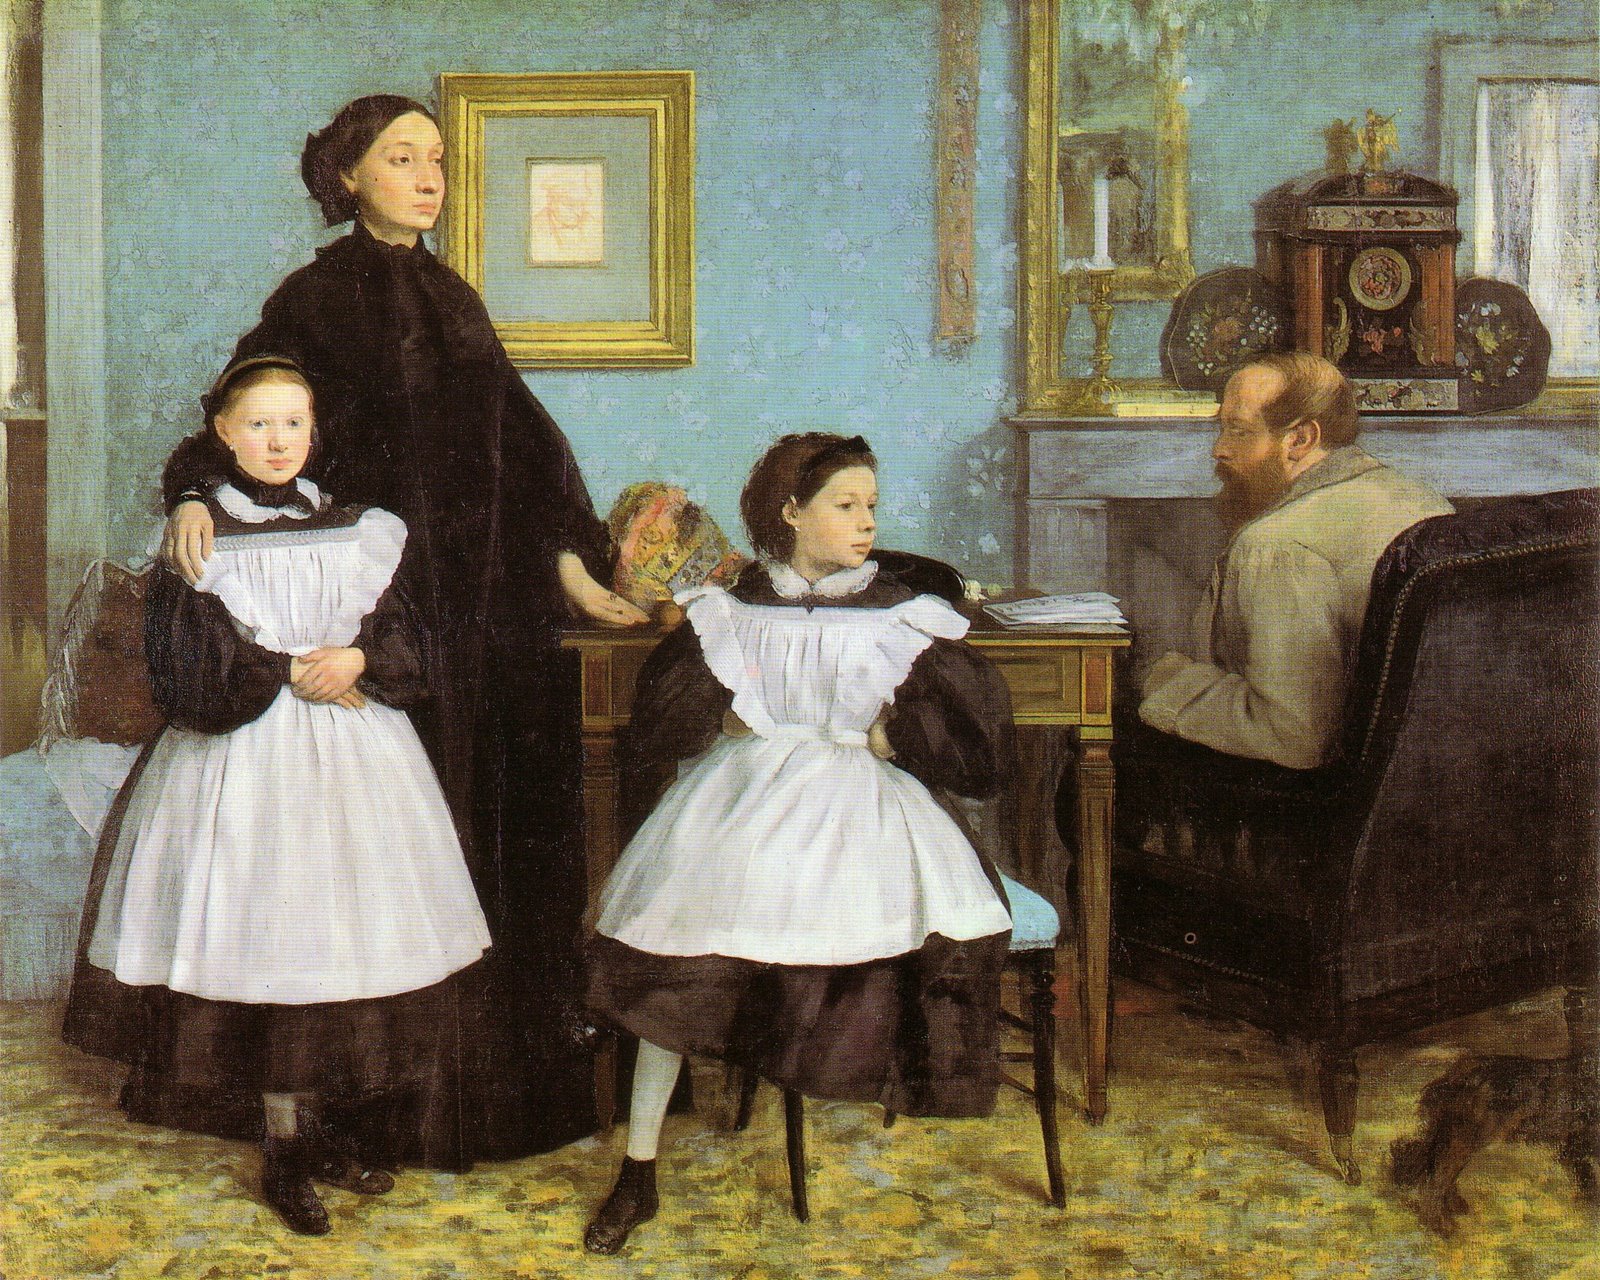 에드가 드가, 벨렐리 가족, 캔버스에 유화, Musée d'Orsay